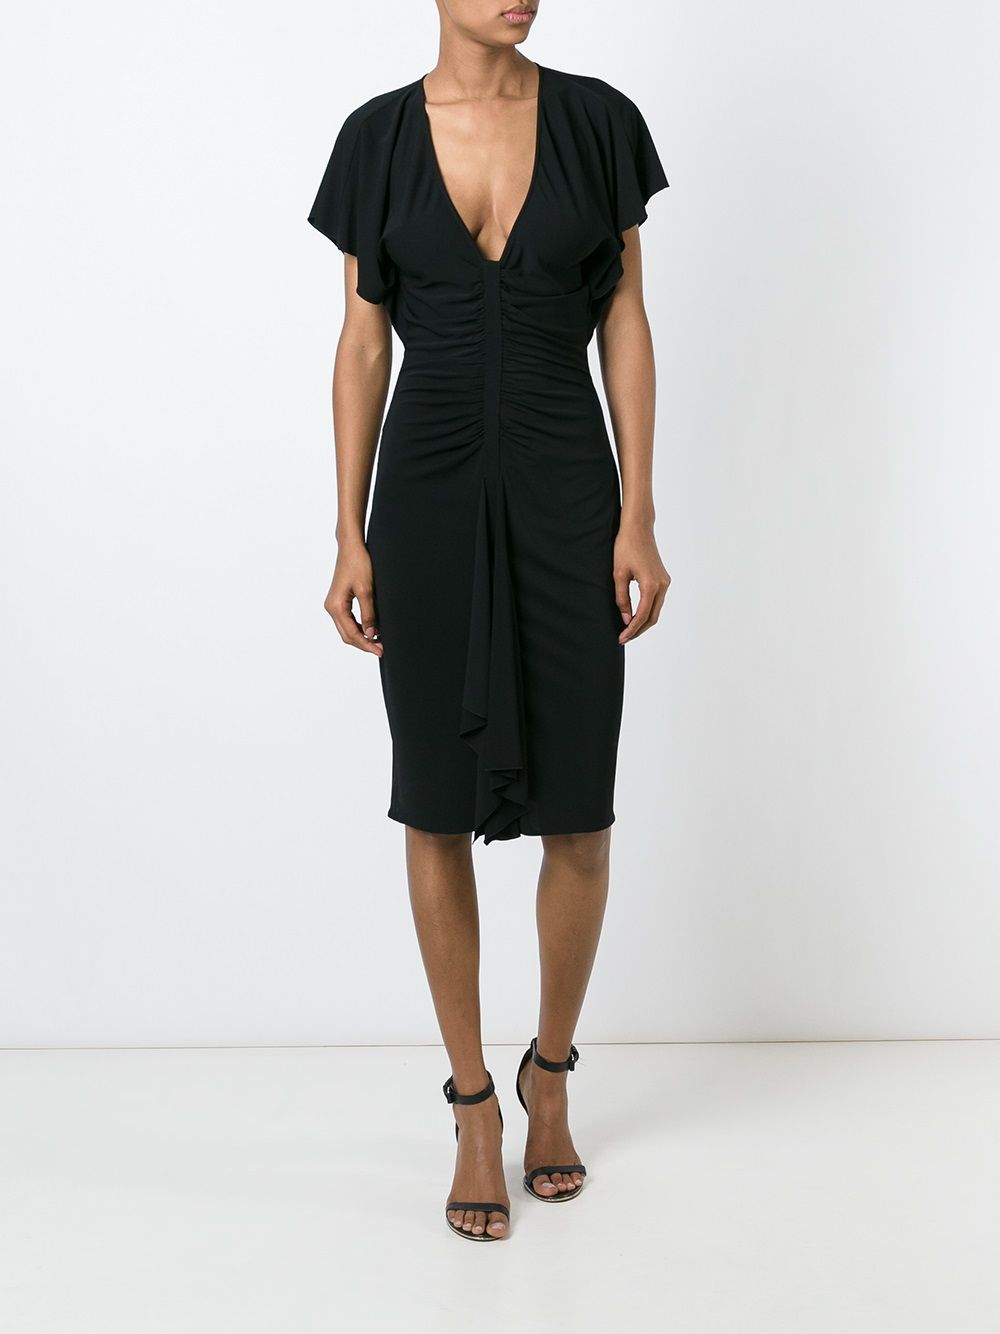 Imagen principal de producto de Versace vestido con escote en V pronunciado - Negro - Versace